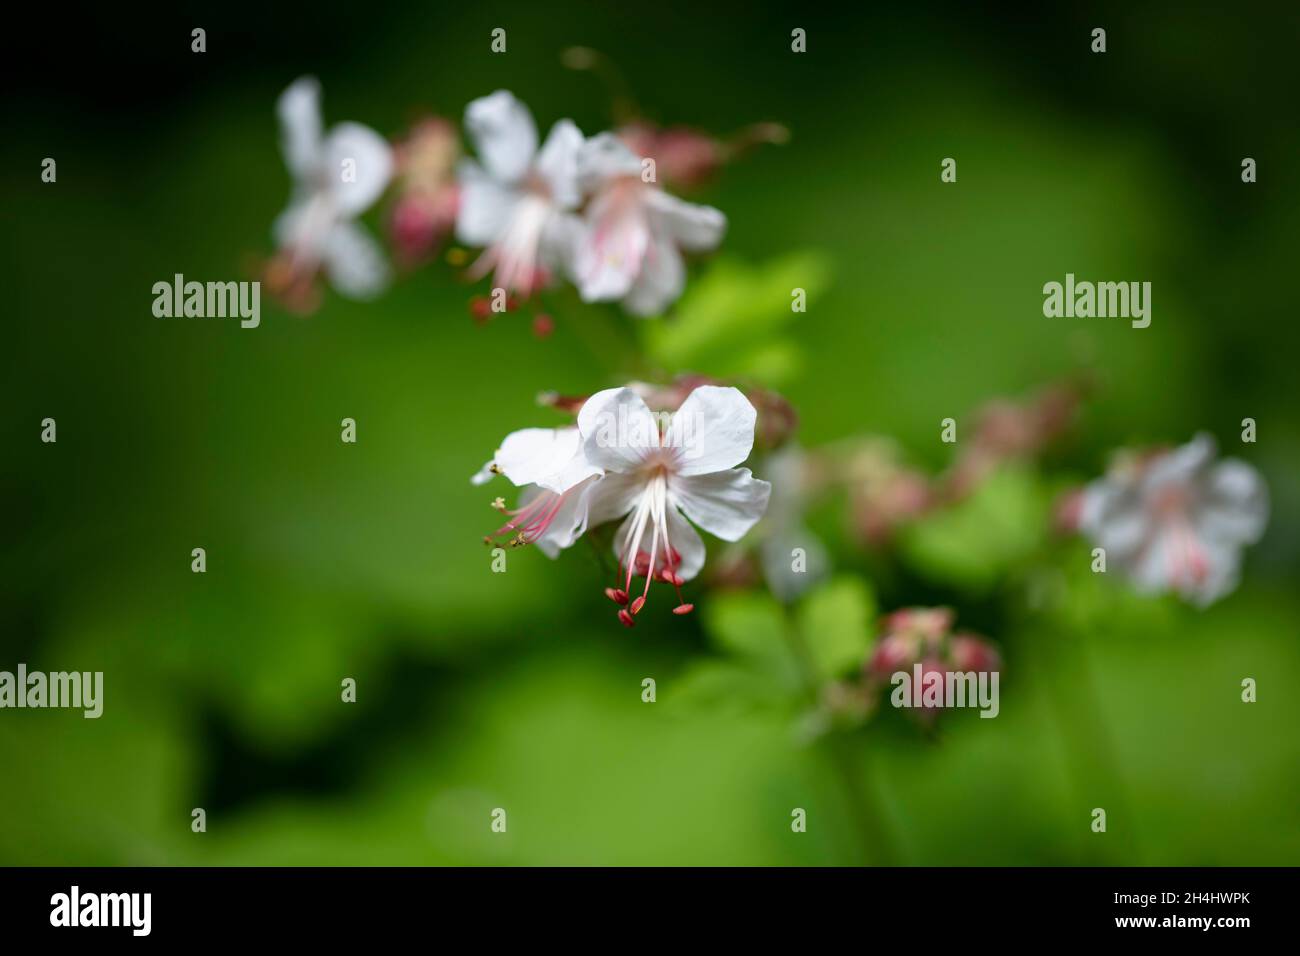 Nahaufnahme einer kleinen Blume mit kleinen weißen Blättner und roten Staubblättner, hintergrund verschwommen in einem Garten in NRW, Deutschland. Banque D'Images